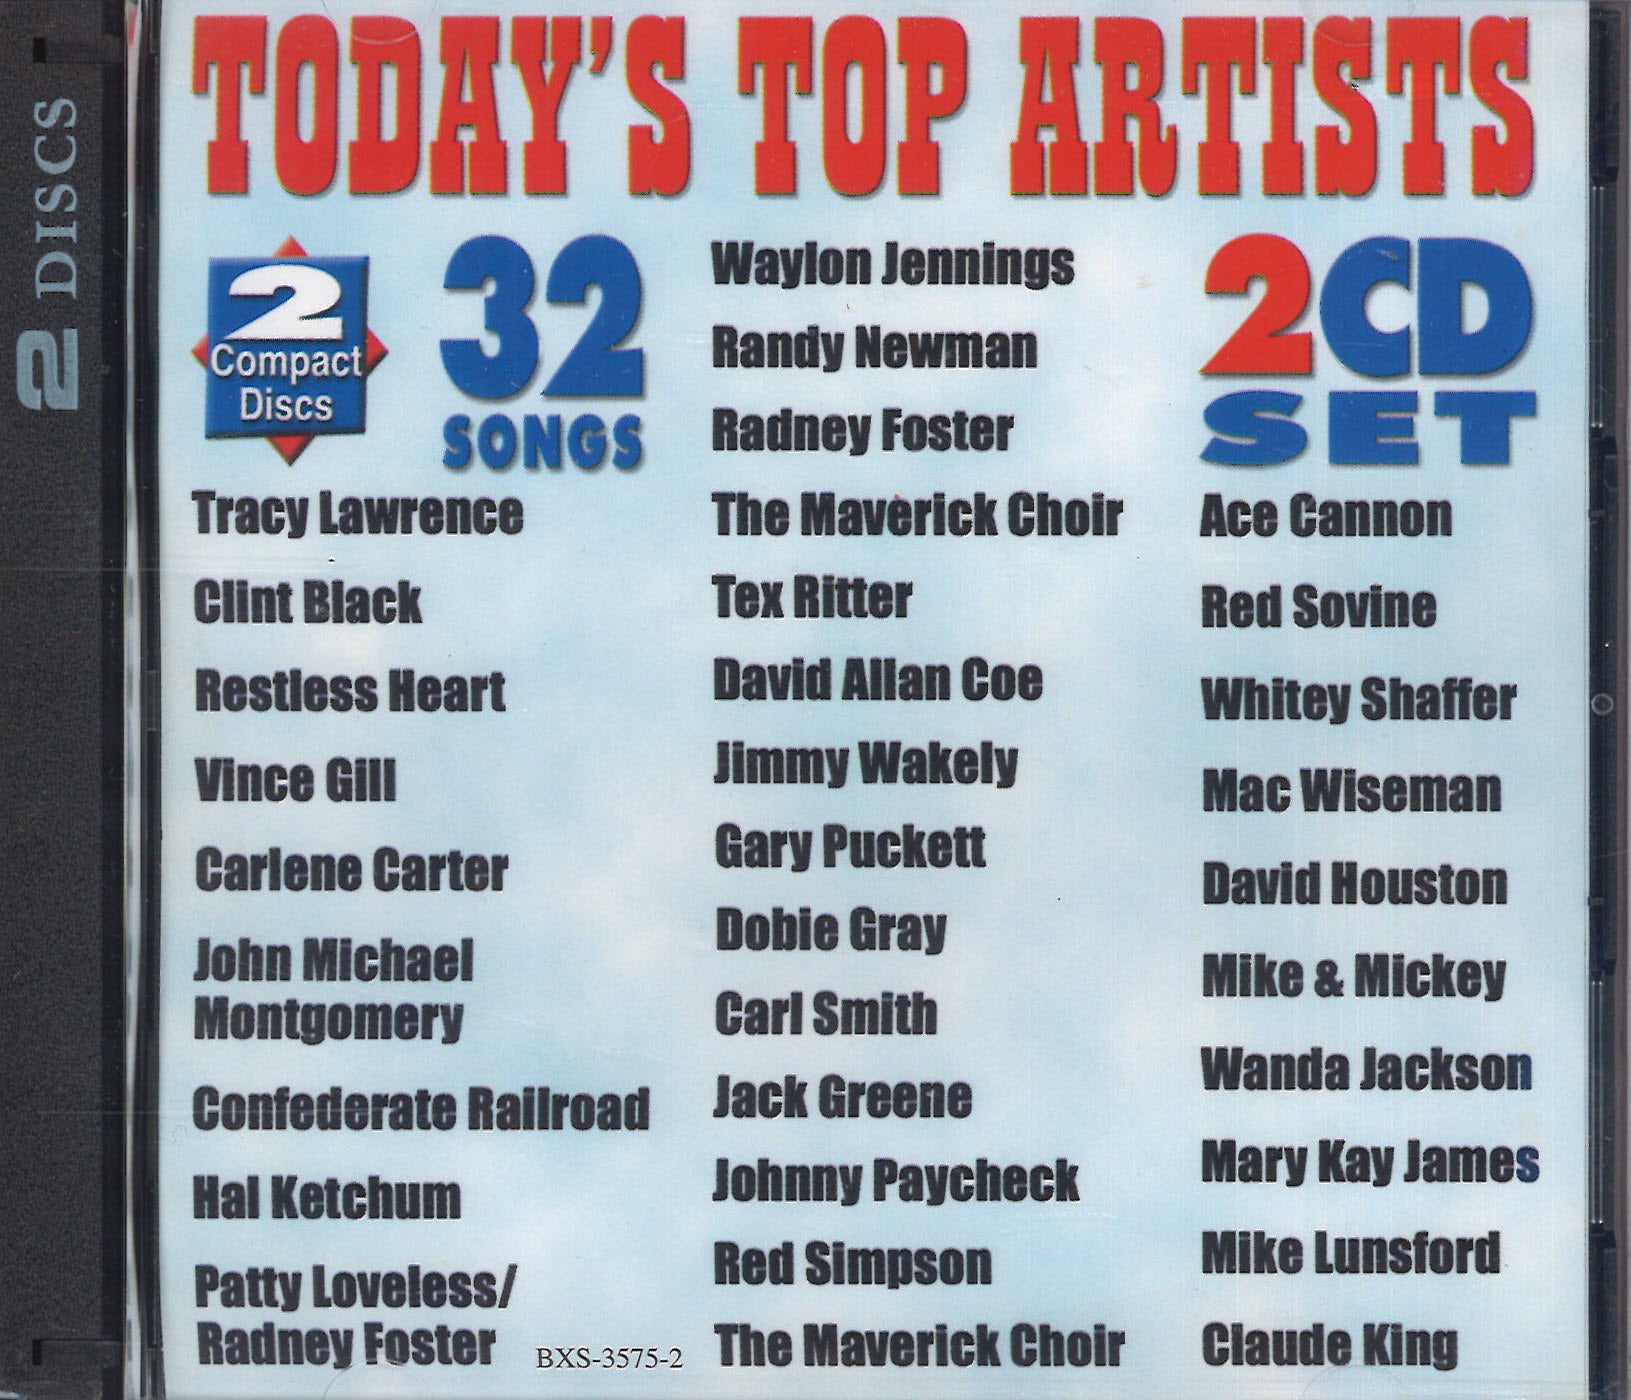 Various Artists Today's Top Artists: 2 CD Set